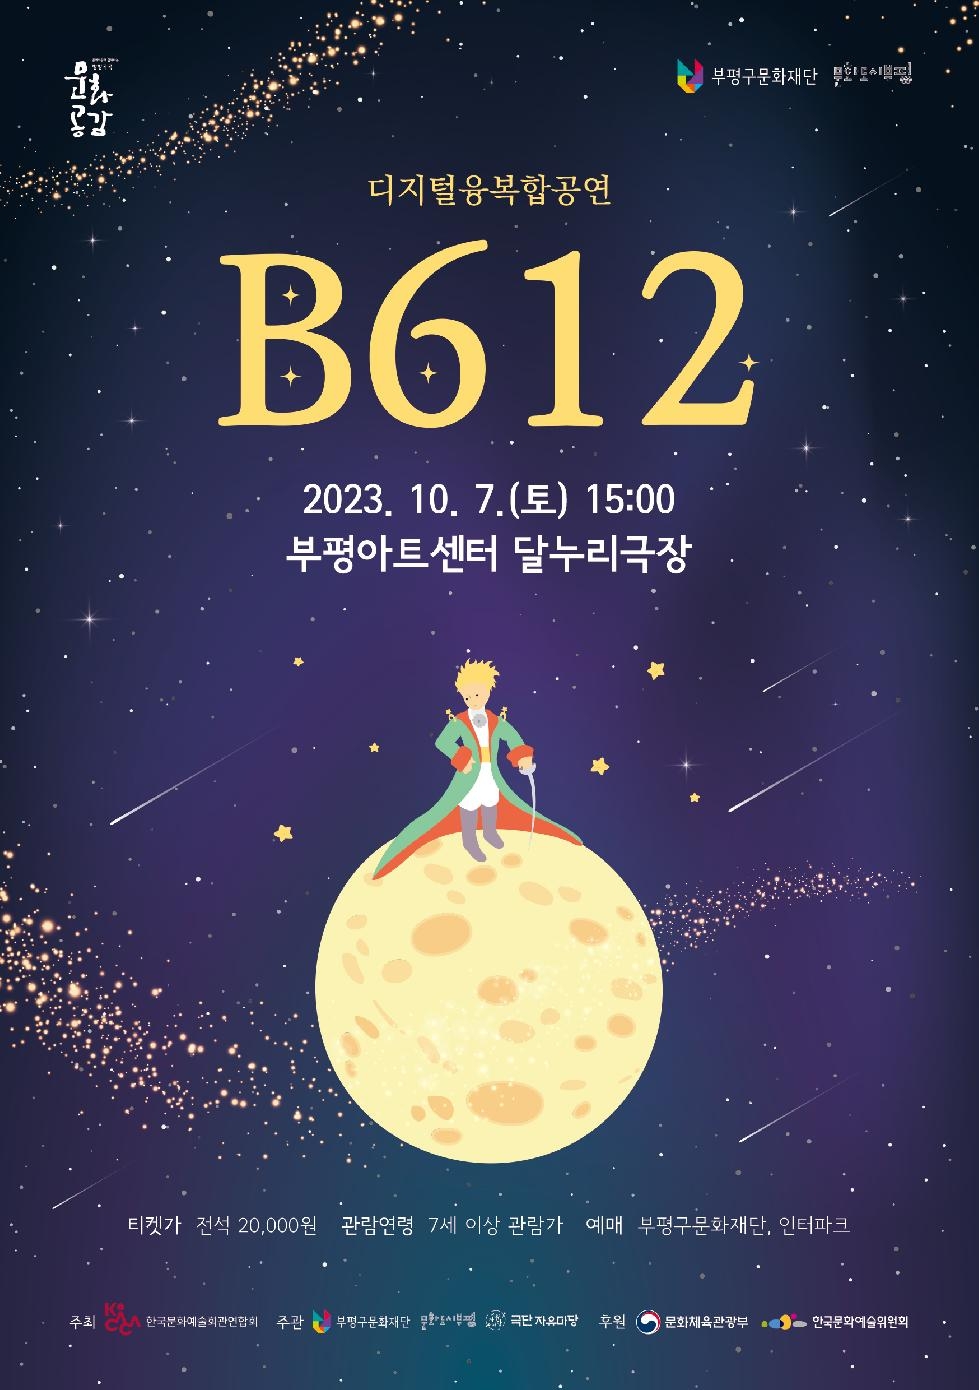 인천 부평구 문화재단, 디지털 입체공연으로 변신한 어린왕자‘B612’ 선